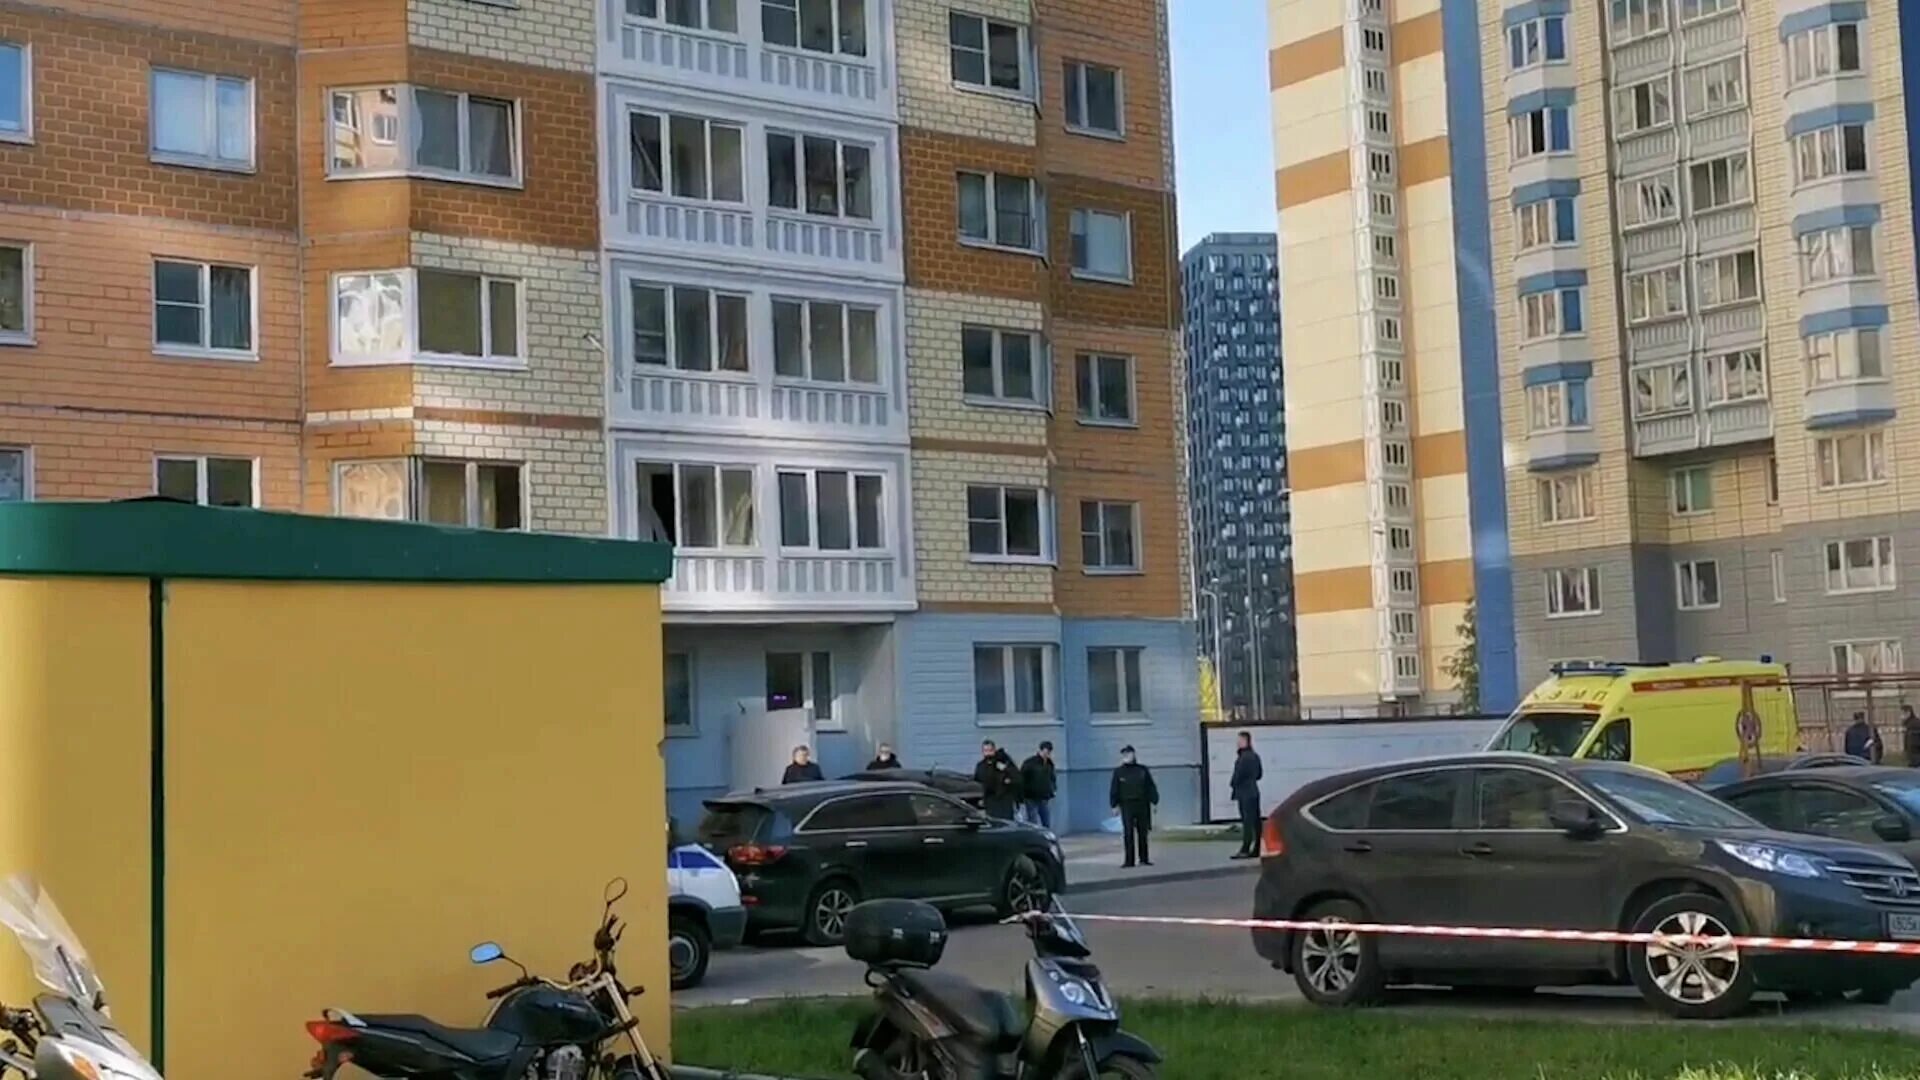 11 10 2021. Выпрыгнула из окна с детьми в Москве. В Москве женщина выпрыгнула из окна. В Москве женщина выпрыгнула из окна с 2 детьми. Мать двоих детей выбросилась из окна.